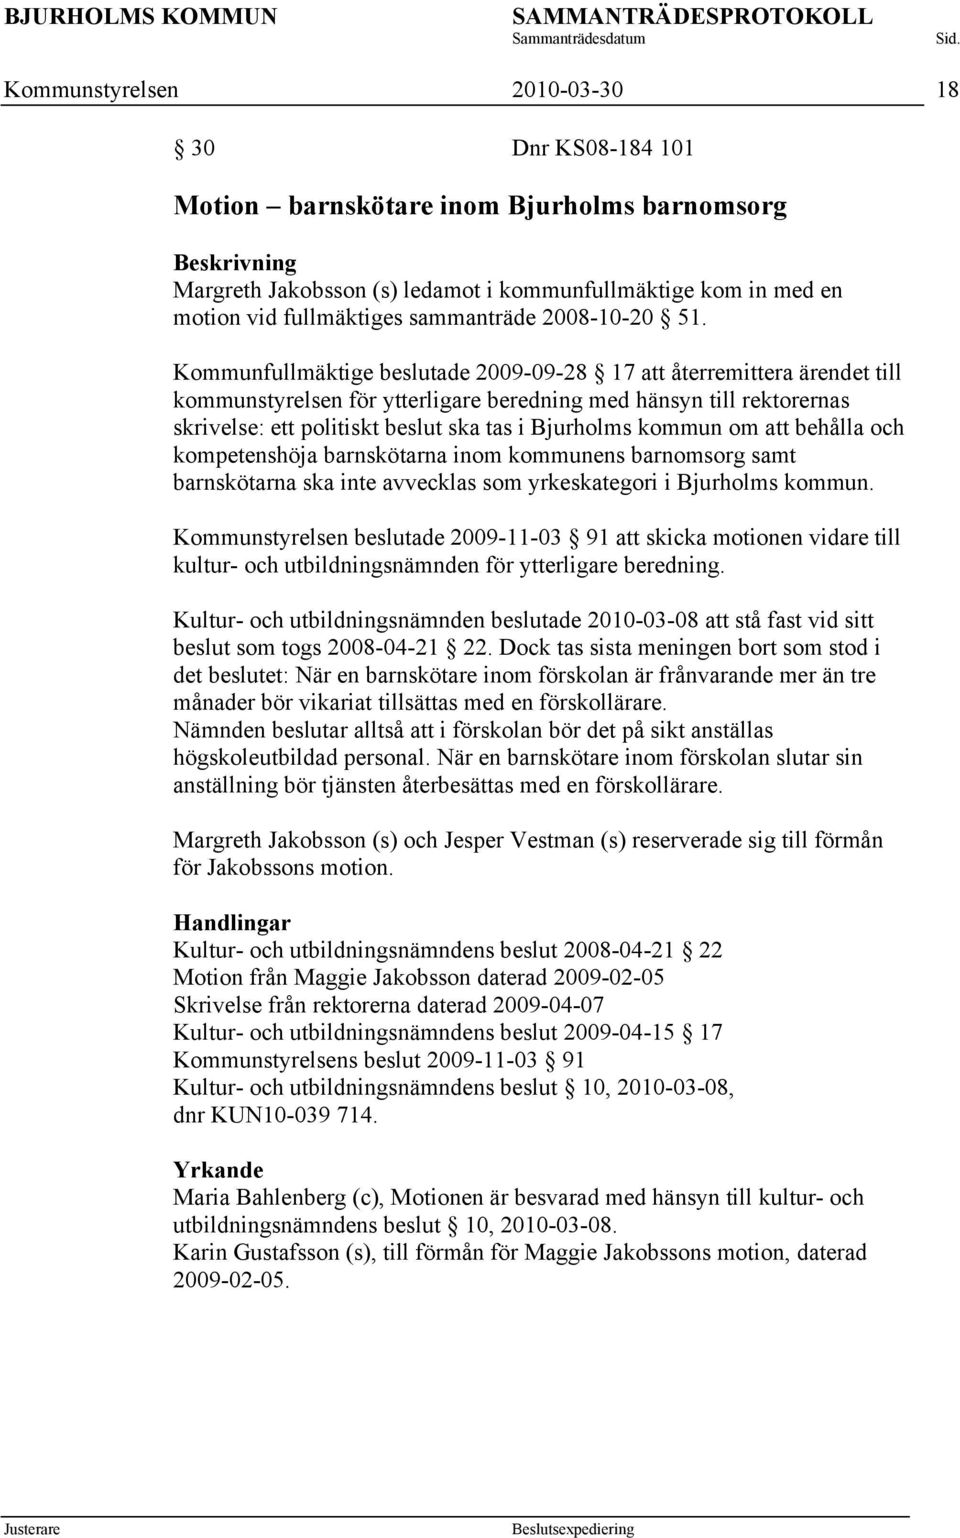 Kommunfullmäktige beslutade 2009-09-28 17 att återremittera ärendet till kommunstyrelsen för ytterligare beredning med hänsyn till rektorernas skrivelse: ett politiskt beslut ska tas i Bjurholms